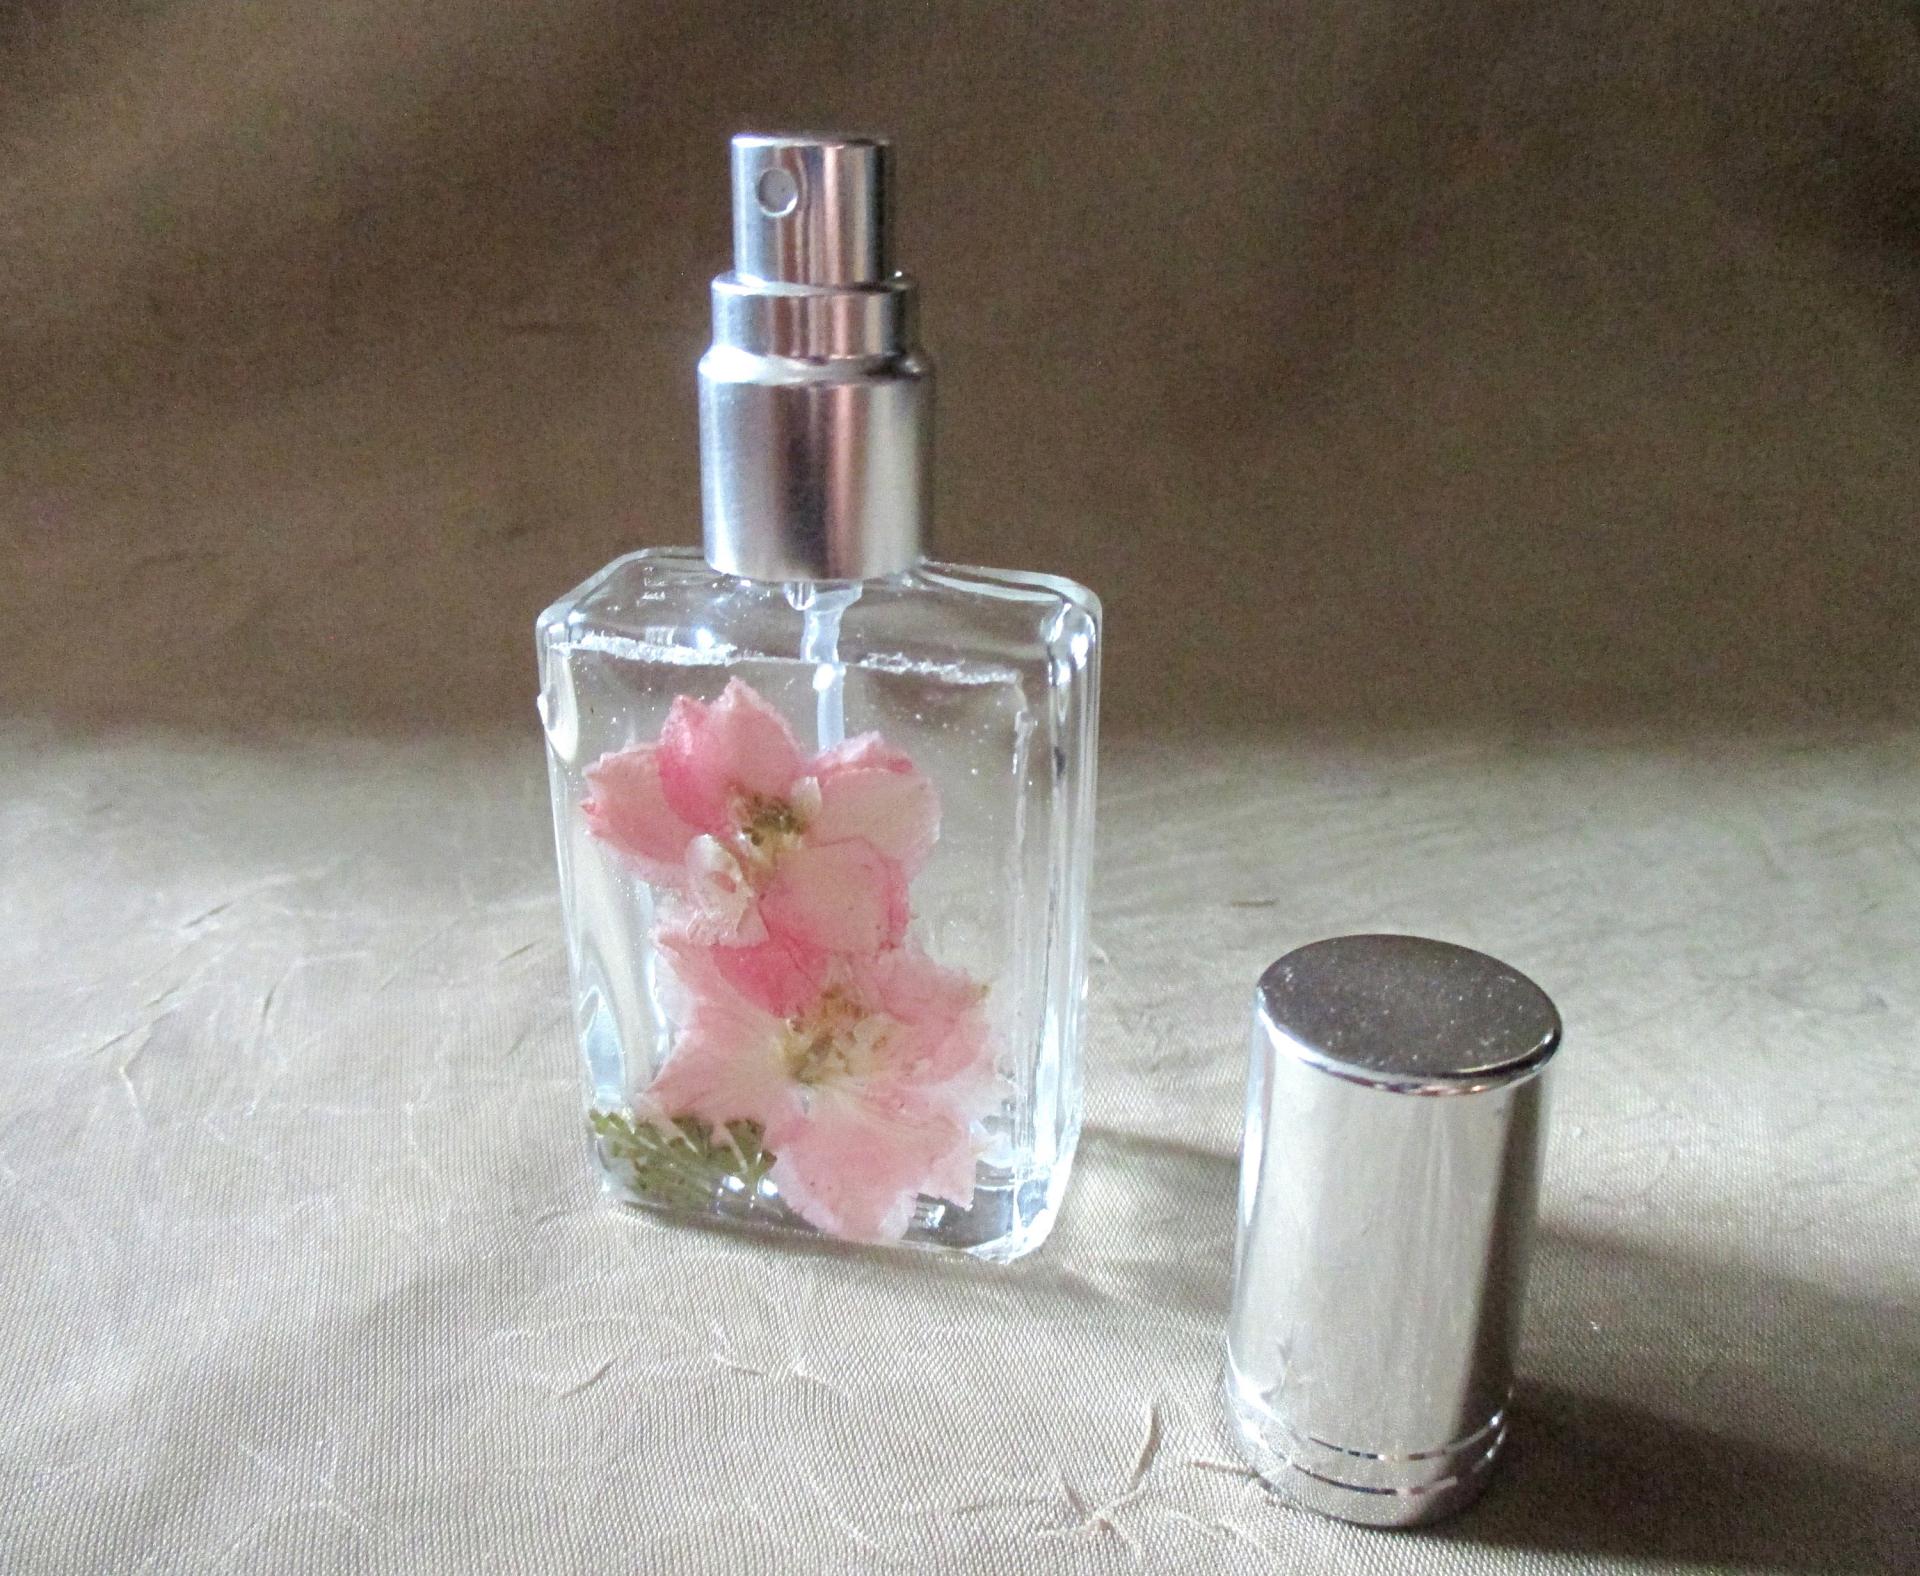 Floral Perfume Bottles, Spray Mister, Square Bottles, Flowers in Resin